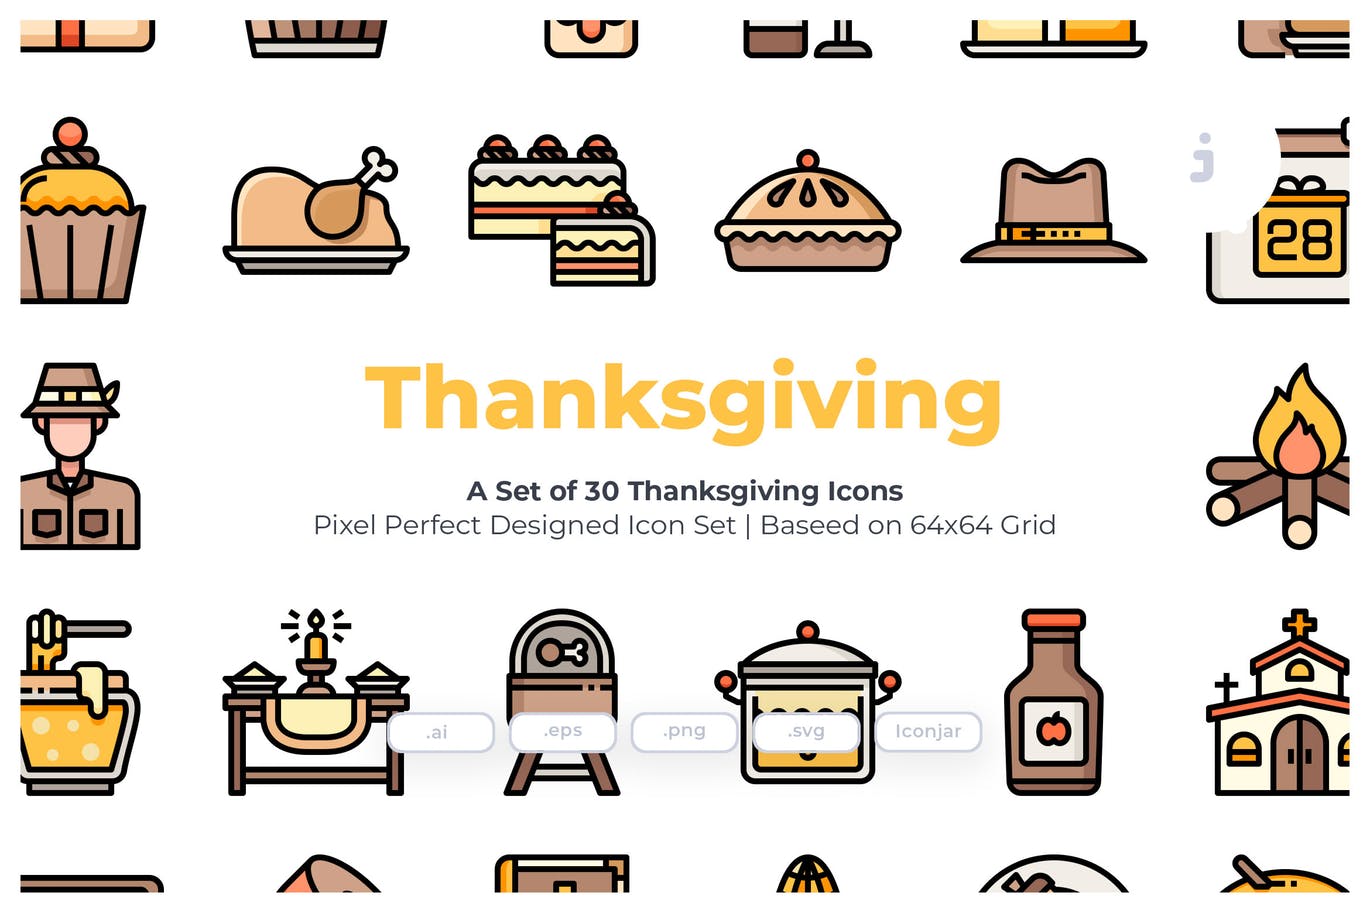 30枚感恩节节日主题矢量图标 30 Thanksgiving Icons插图